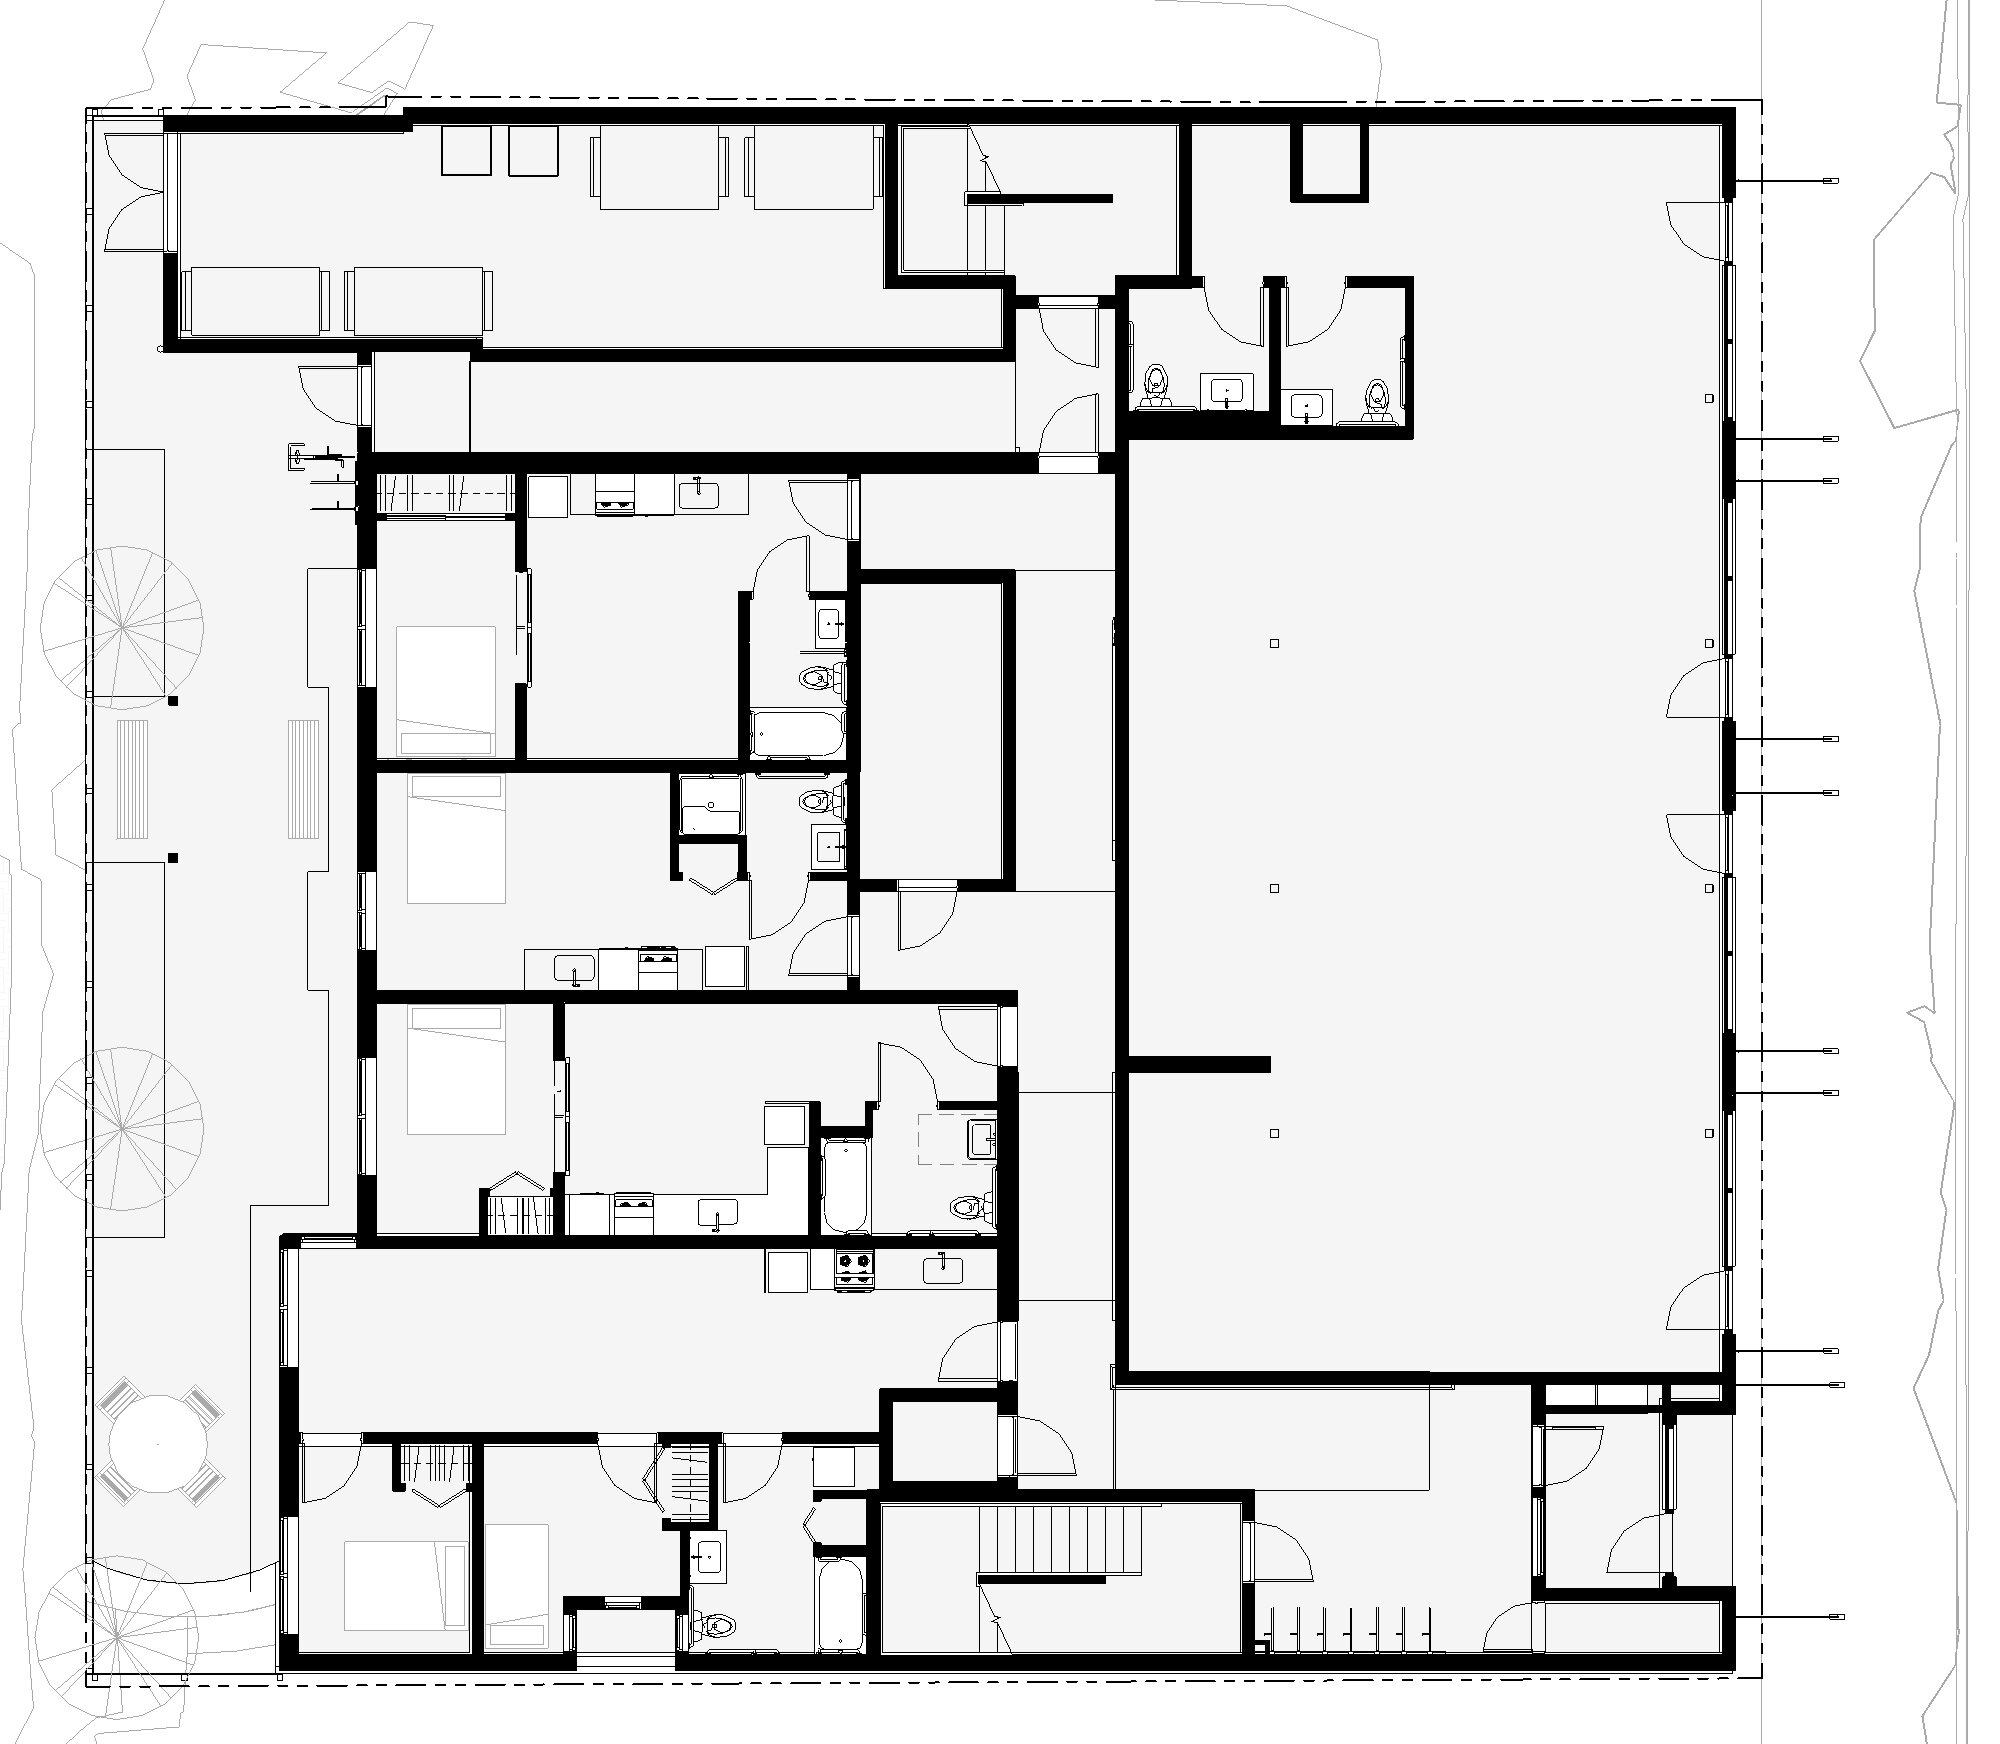 Paar 8541_CA6-2018 (post permit revision) - Floor Plan - LEVEL 1 (MARKETING).jpg